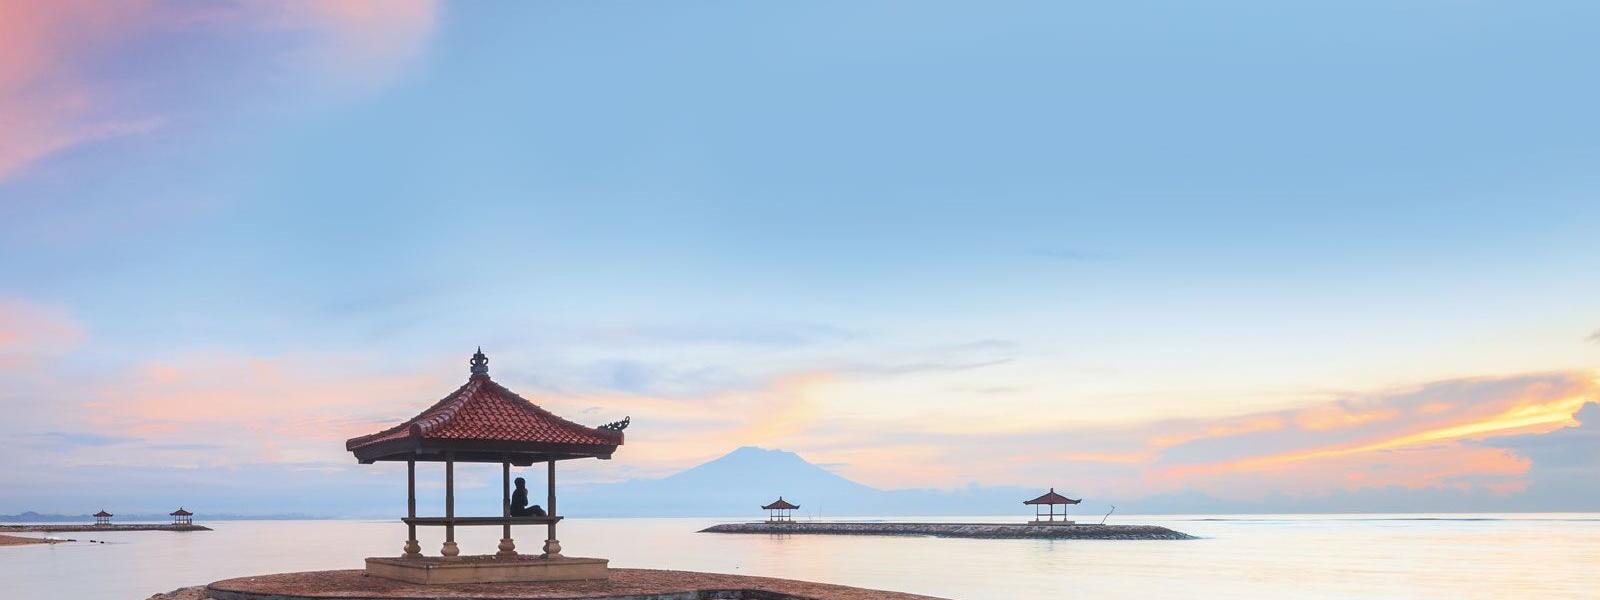 Ferienwohnung und Ferienhaus in Bali - e-domizil